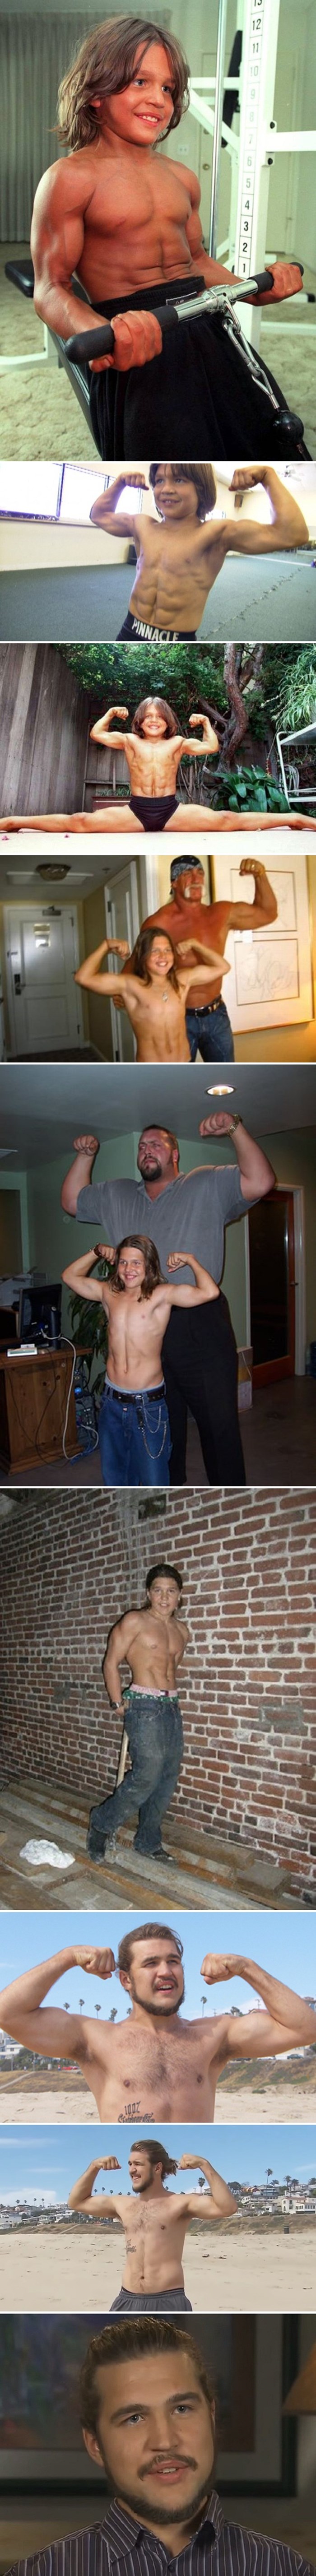 Sjećate li se još dječaka koji je s 10 godina bio nabildan kao bodybuilder? Pogledajte kako danas izgleda!